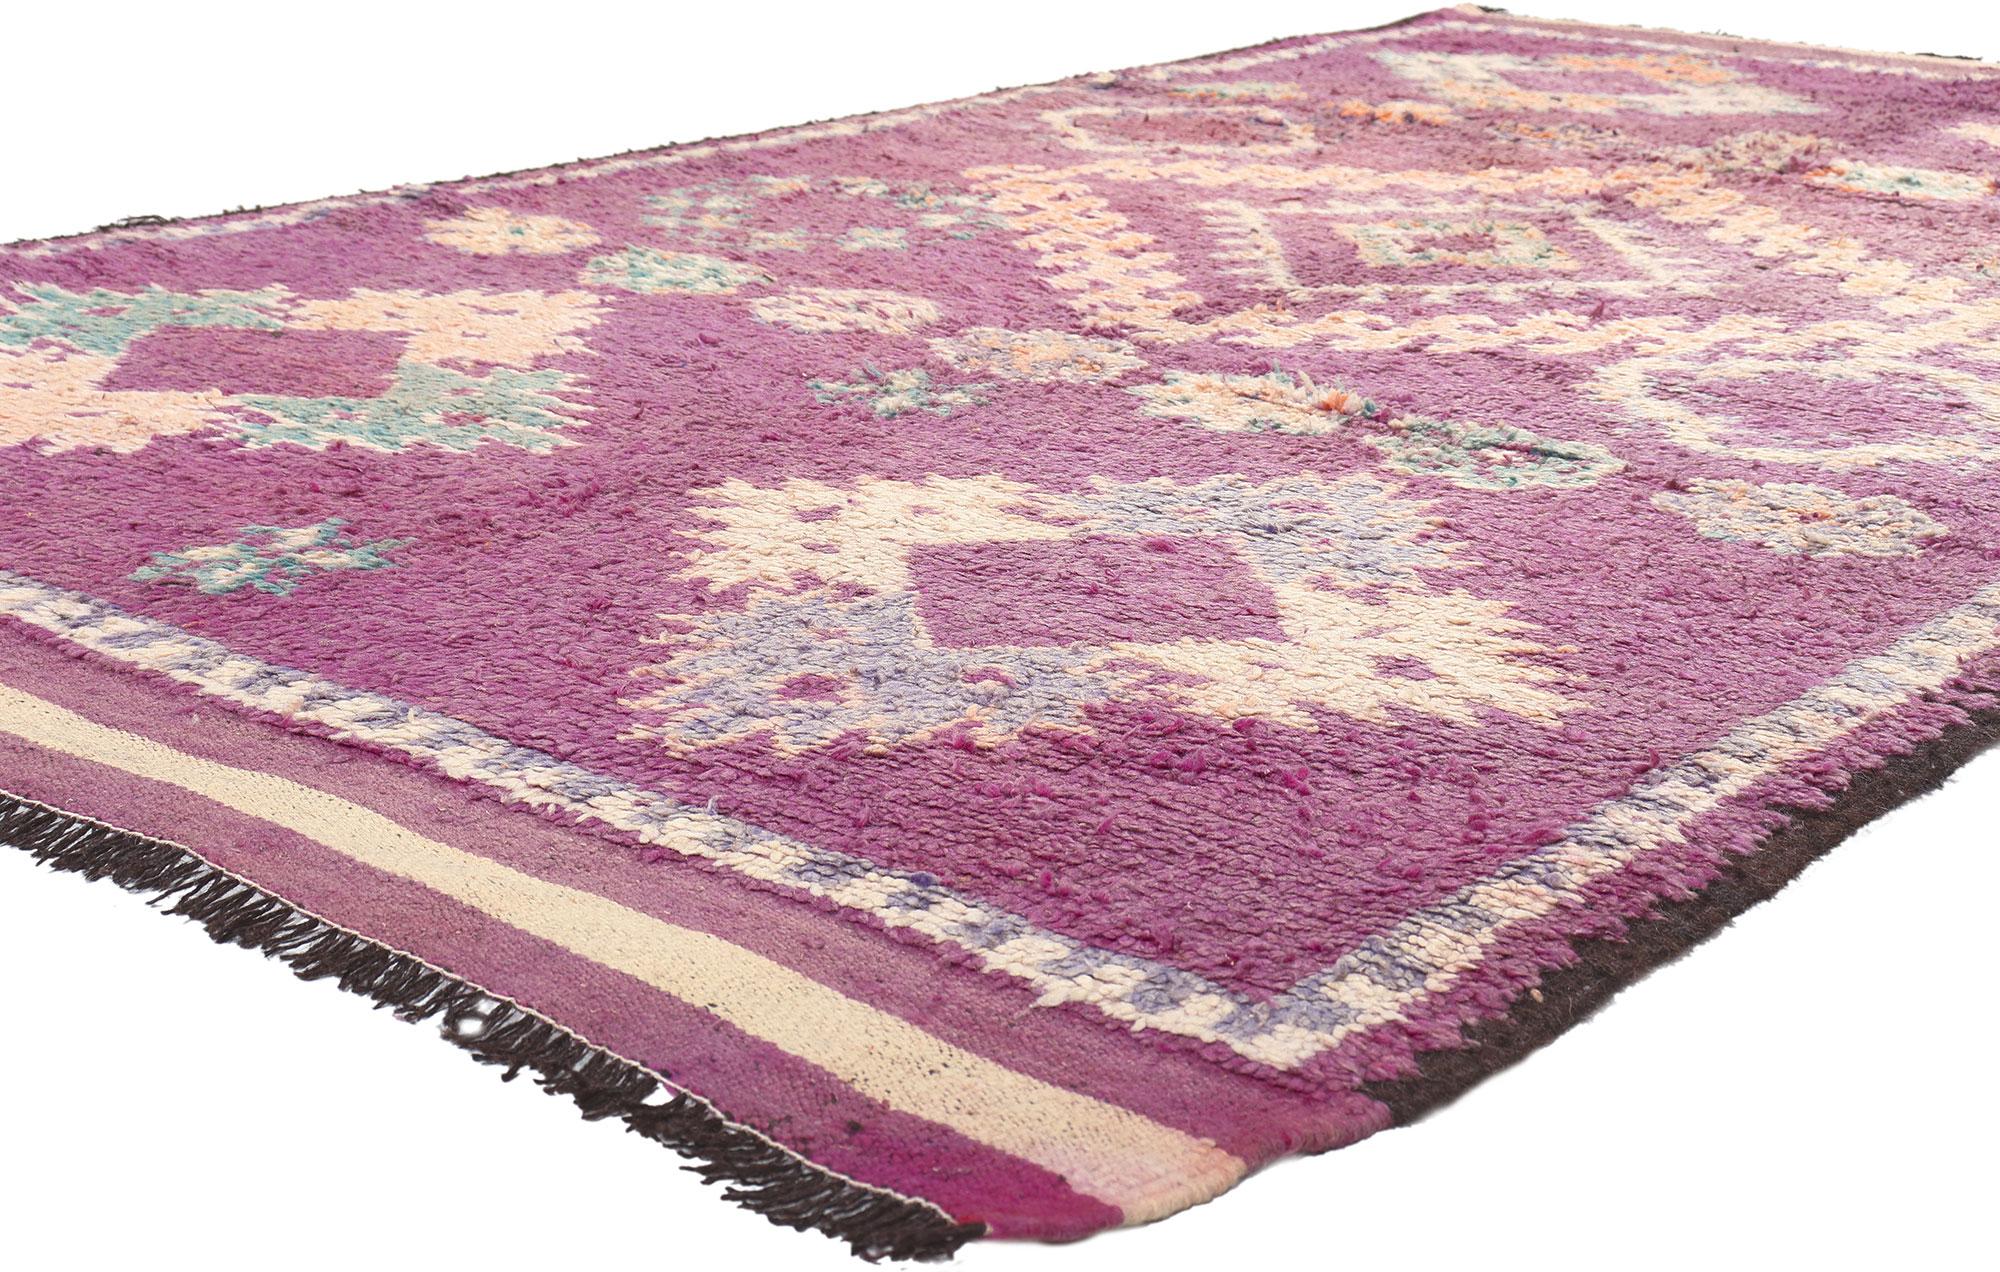 20983 Vintage Lila Talsint Marokkanischer Teppich, 05'10 x 10'11. Aus dem Herzen der Provinz Figuig, der Heimat des Stammes der Ait Bou Ichaouen, stammt der marokkanische Teppich Talsint, benannt nach der ländlichen Stadt Talsint im Nordosten